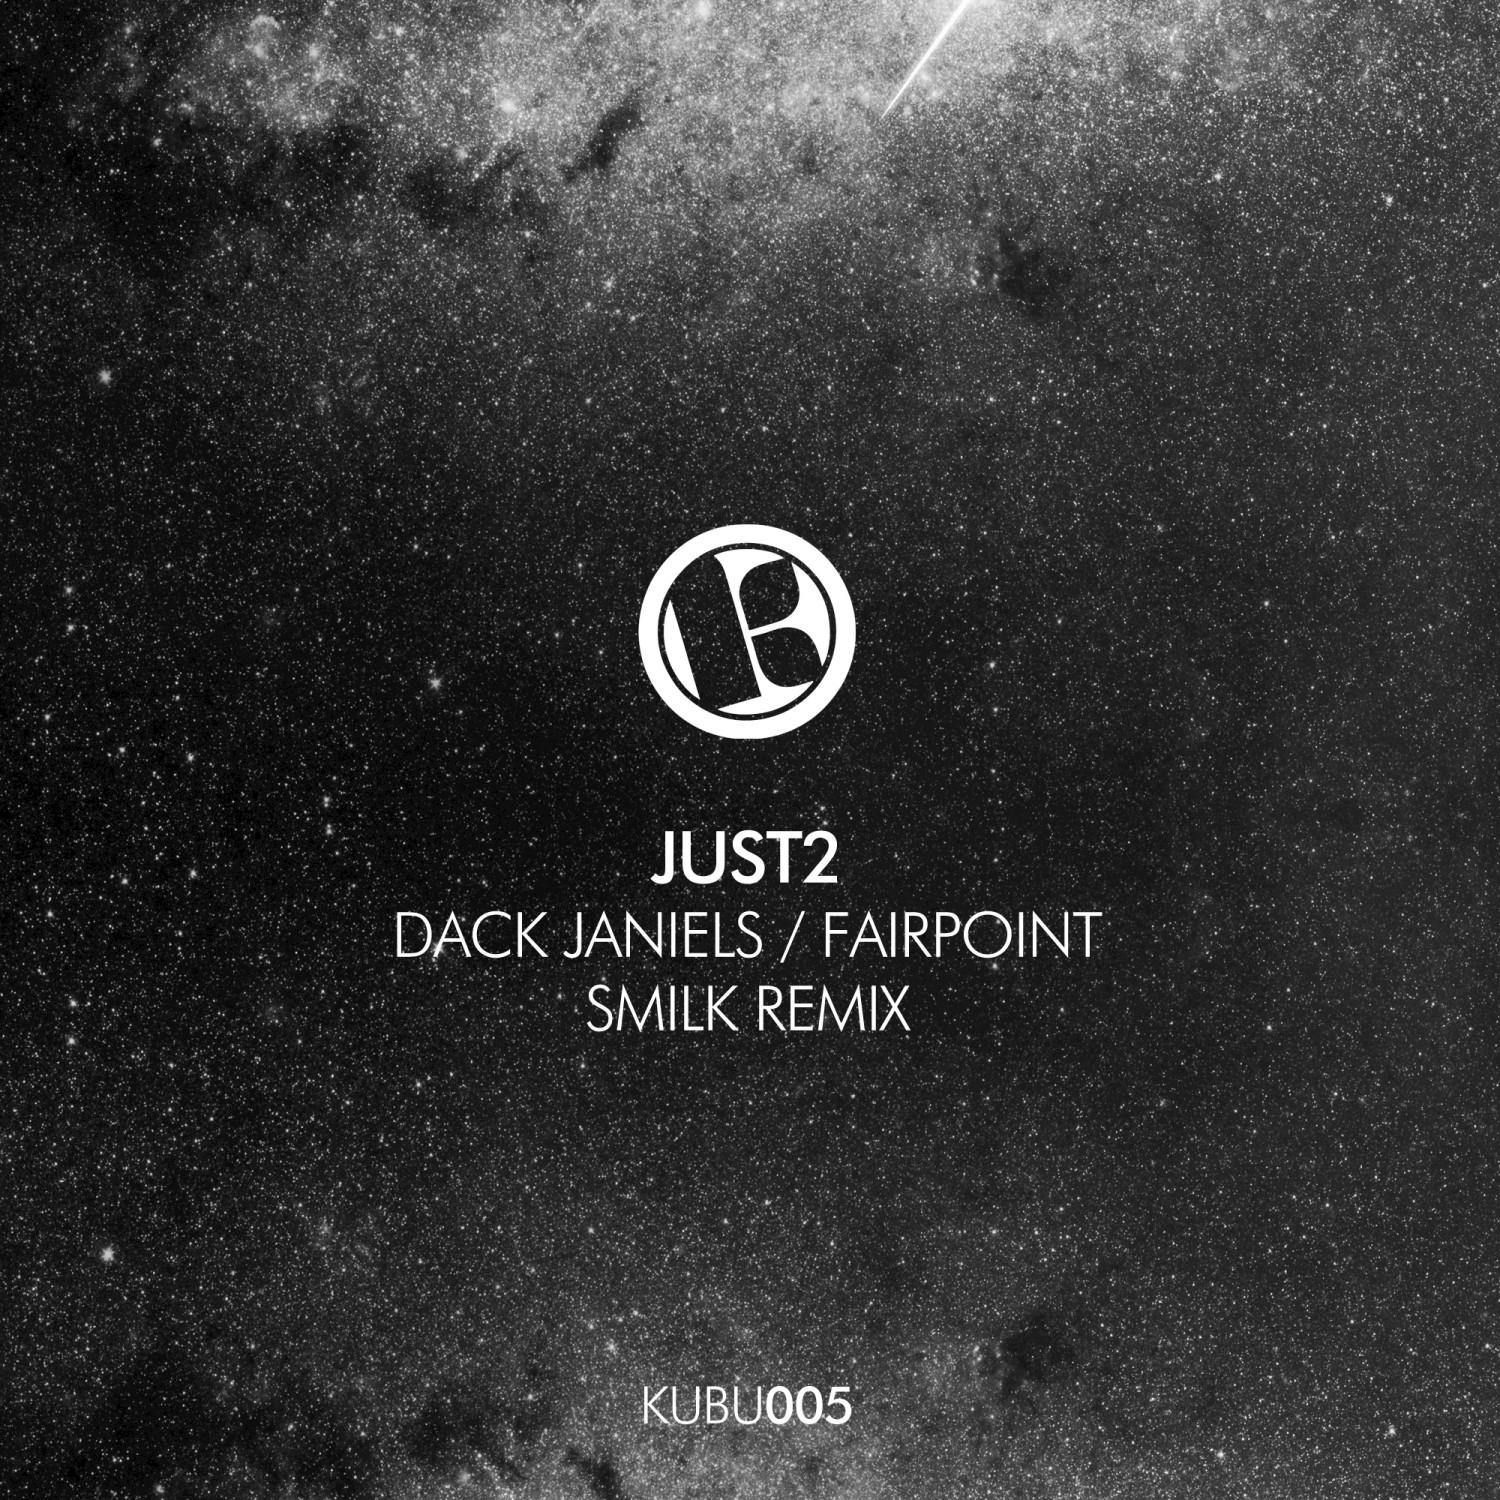 Dack Janiels / Fairpoint